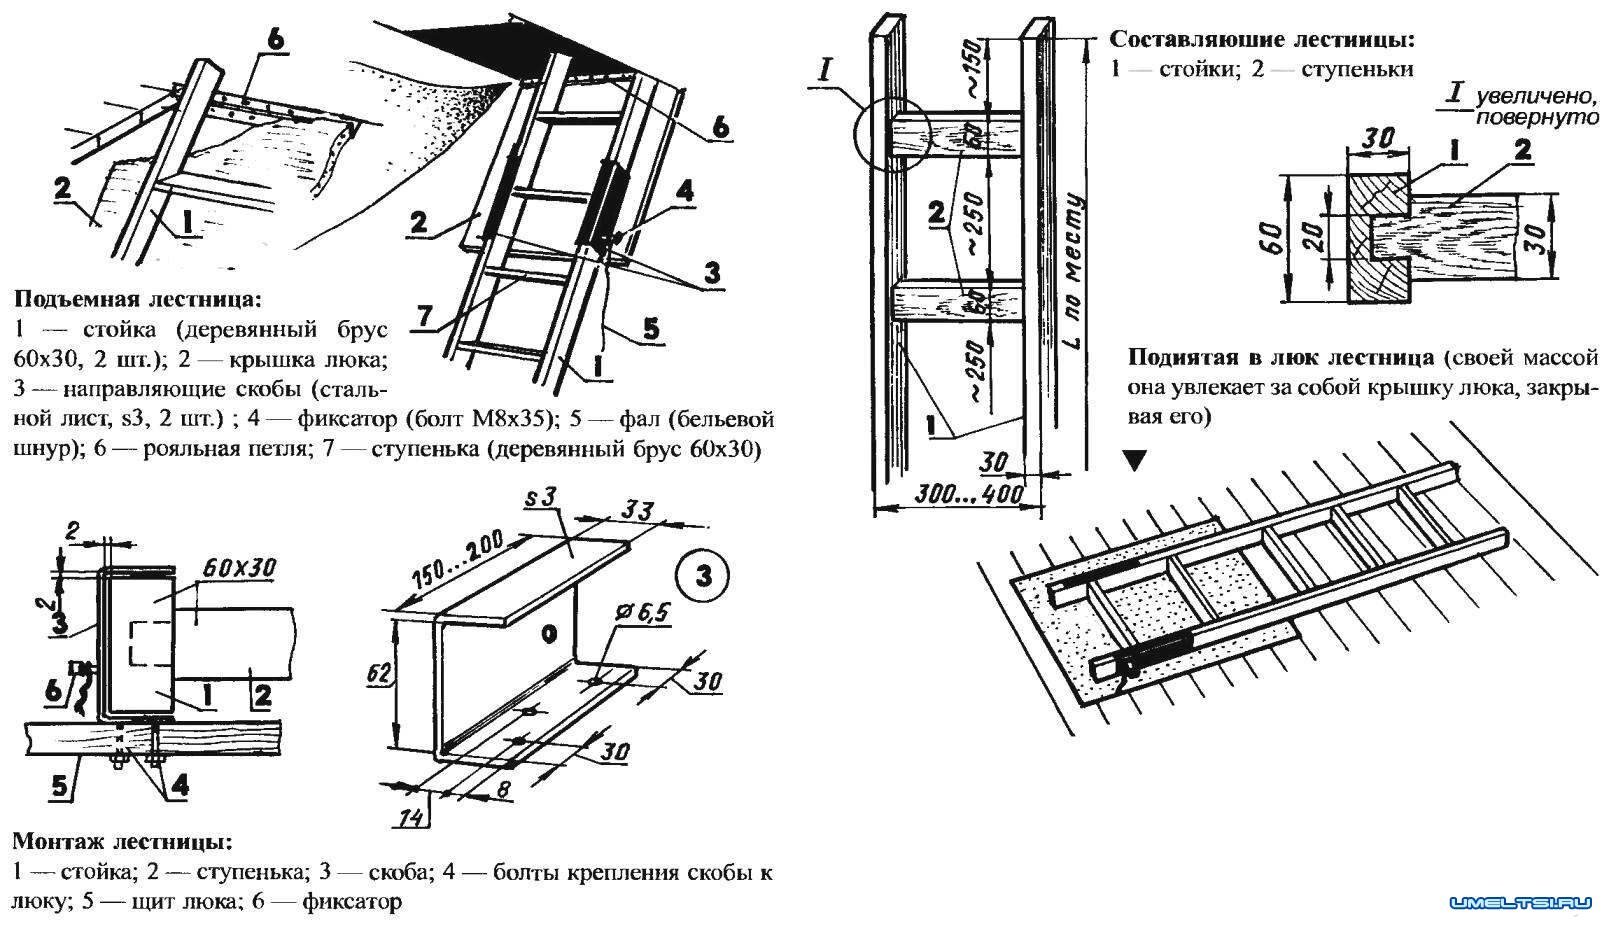 Лестницы складные и раскладные для чердака: виды выдвижных конструкций, изготовление и установка своими руками